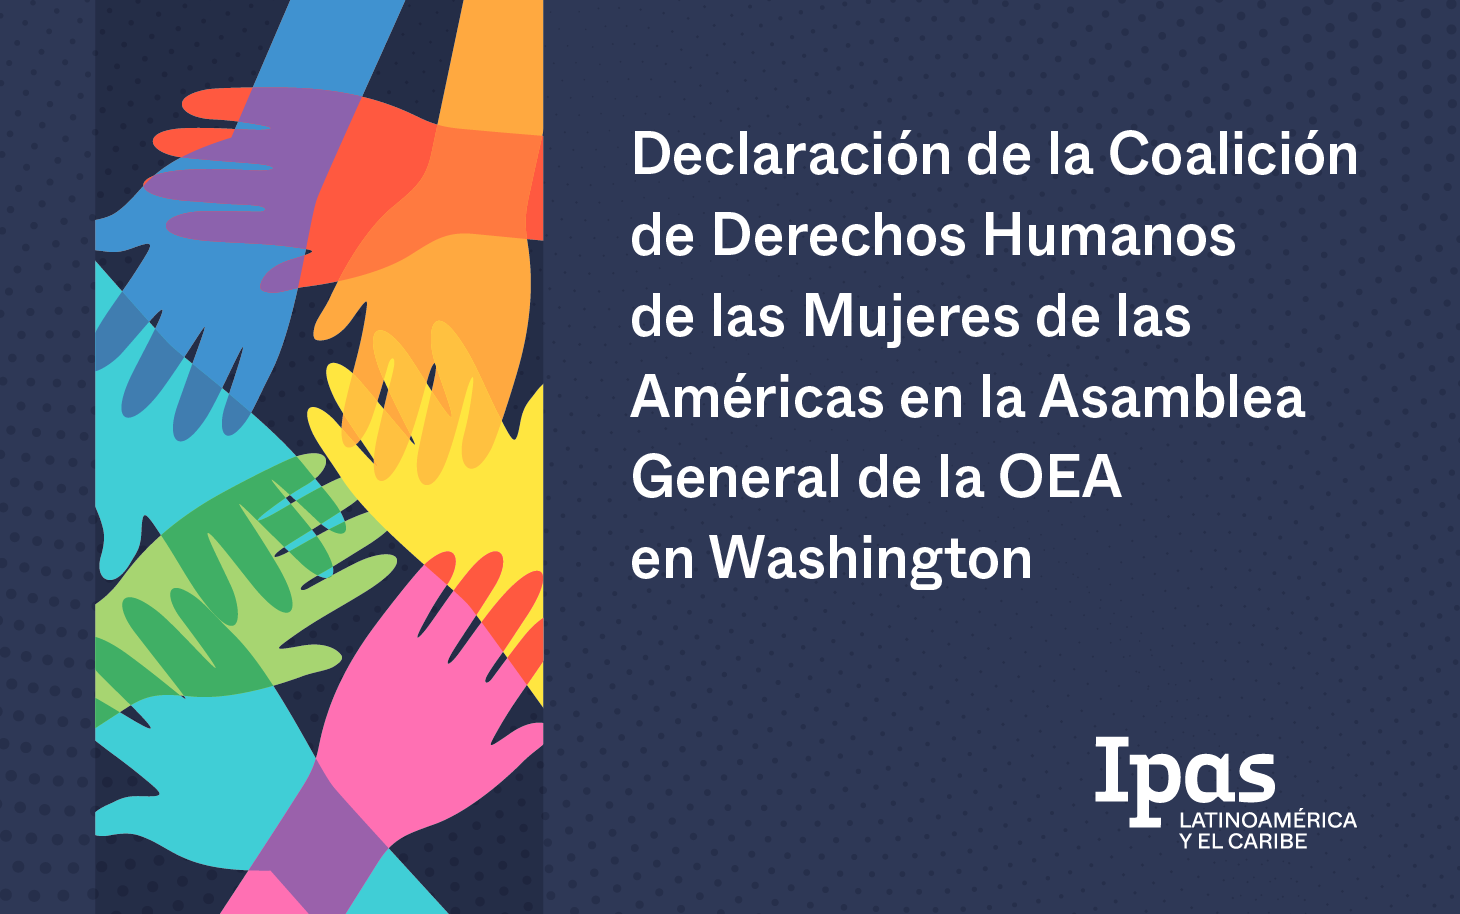 Declaración de la Coalición de Derechos Humanos de las Mujeres de las Américas en la Asamblea General de la OEA en Washington